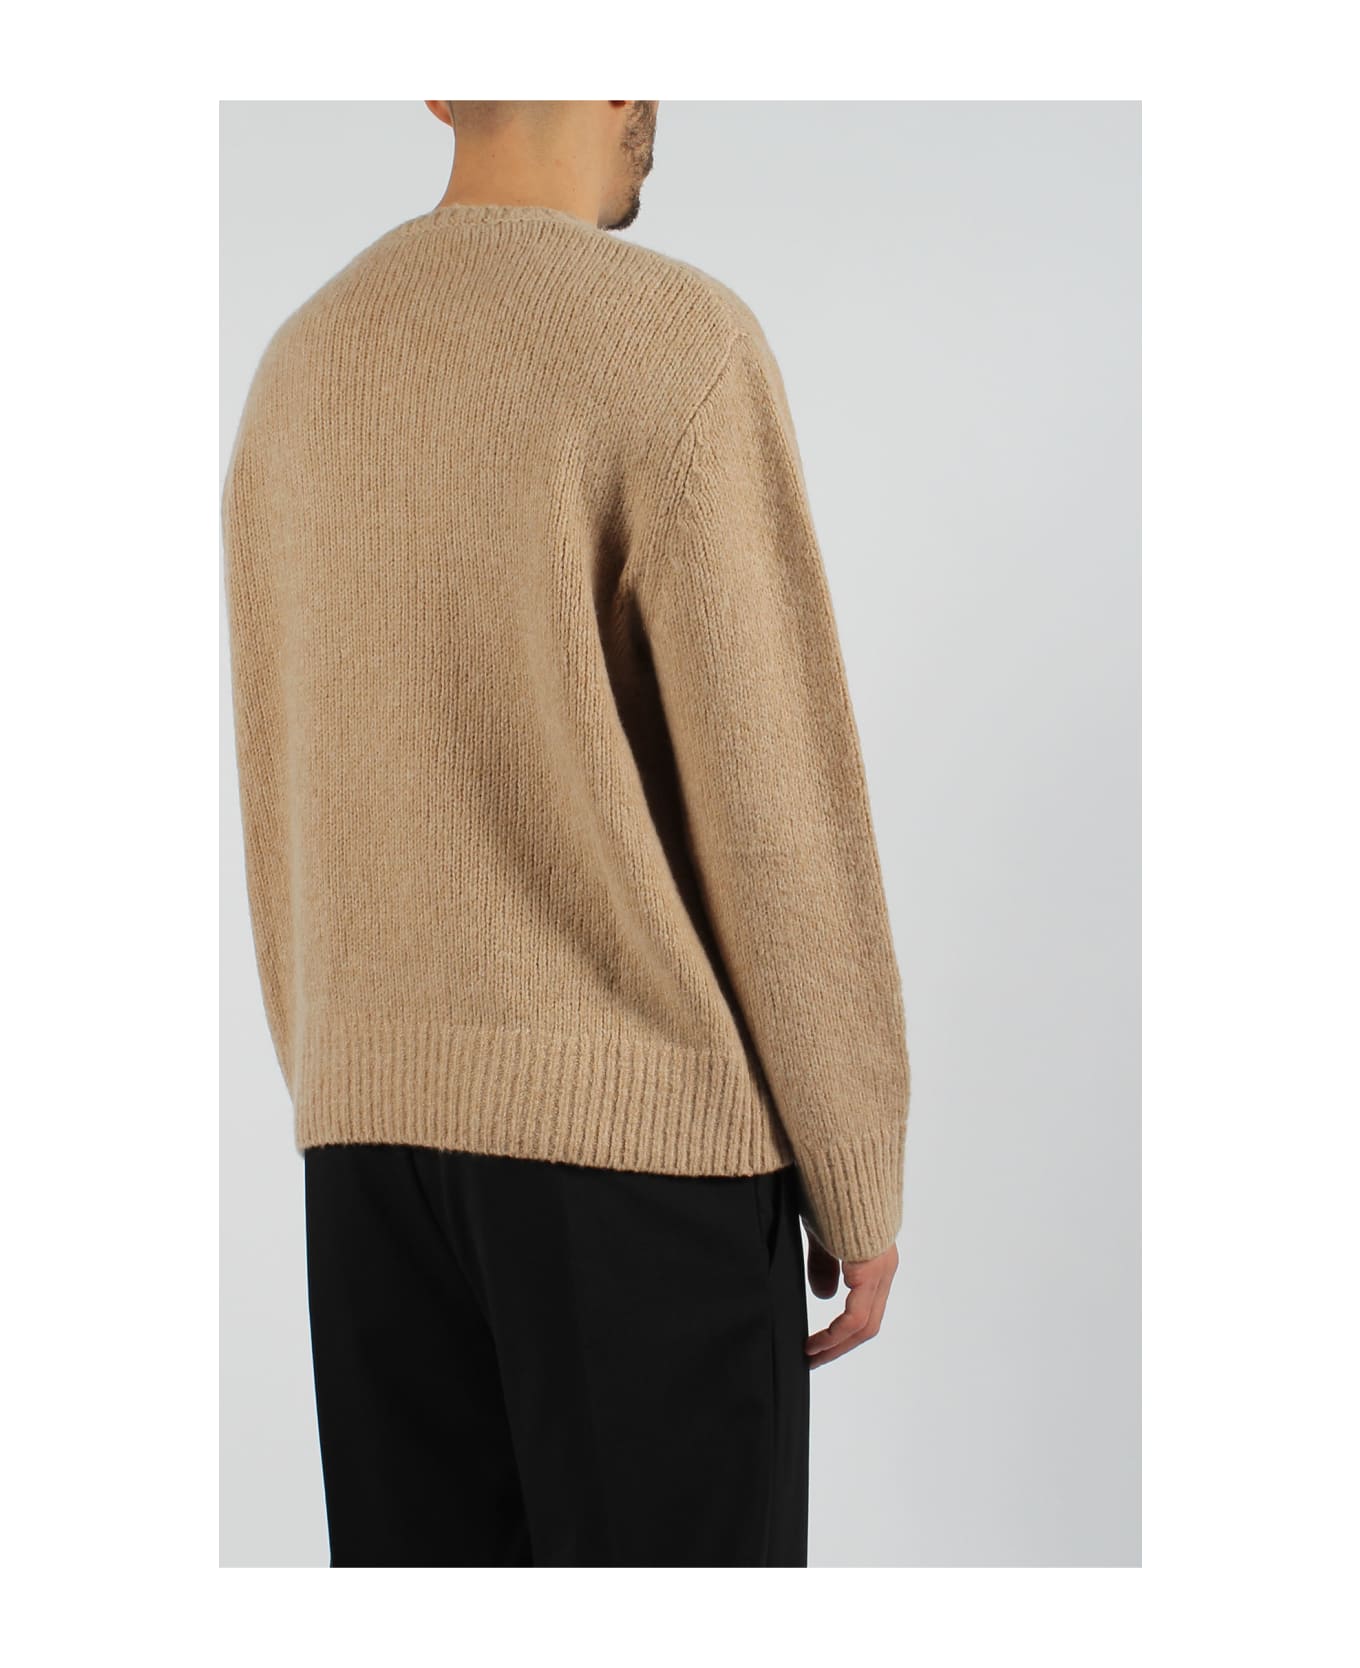 Neil Barrett Thunderbolt Patch Sweater - Light Brown